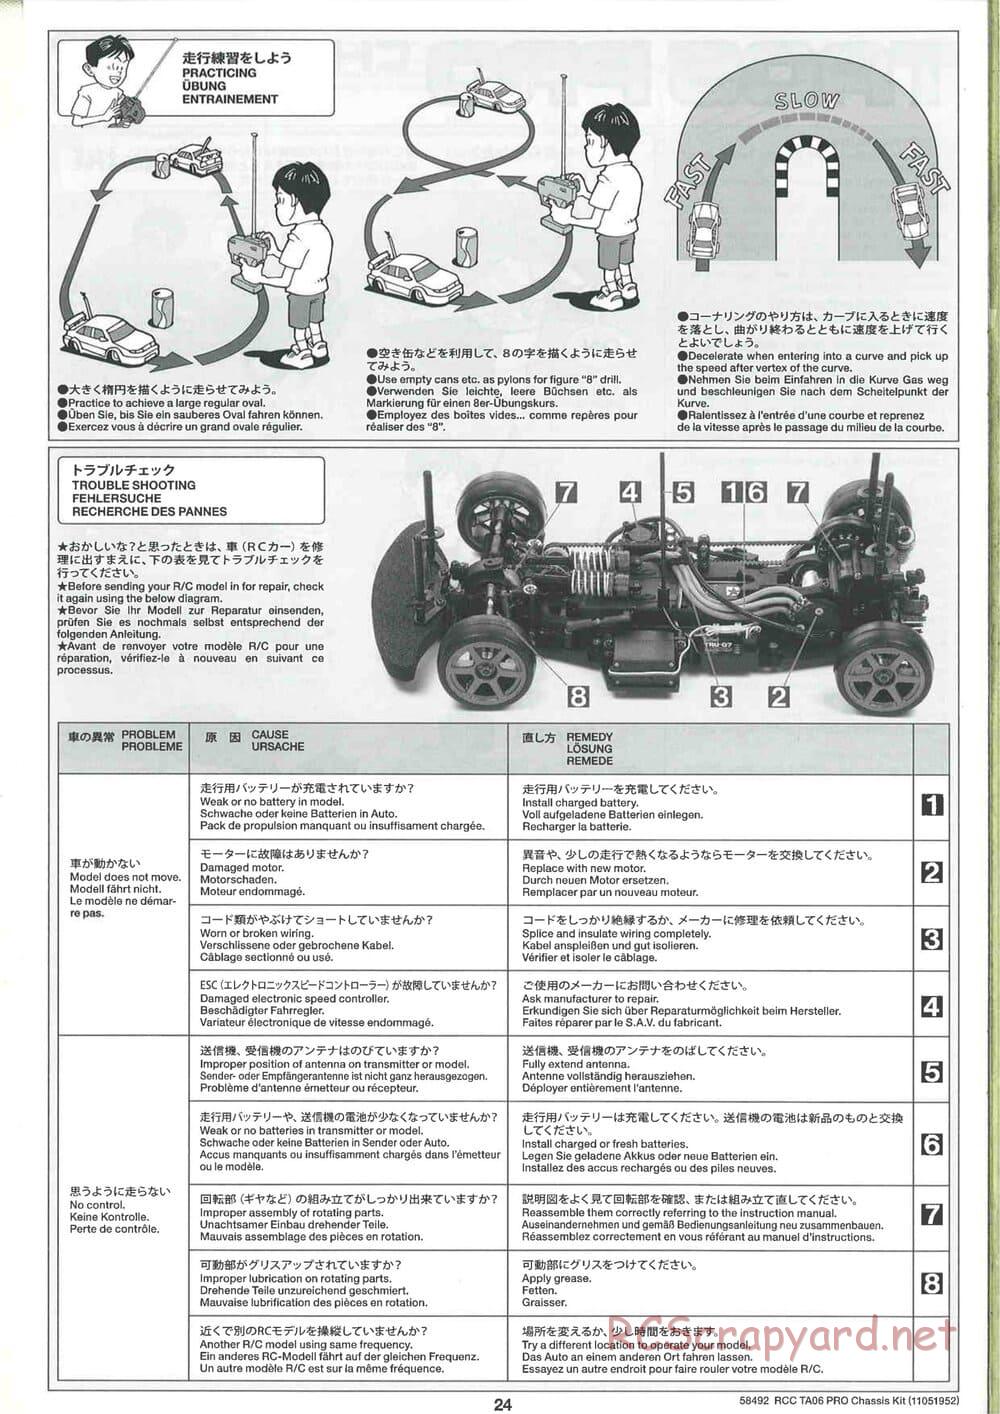 Tamiya - TA06 Pro Chassis - Manual - Page 24